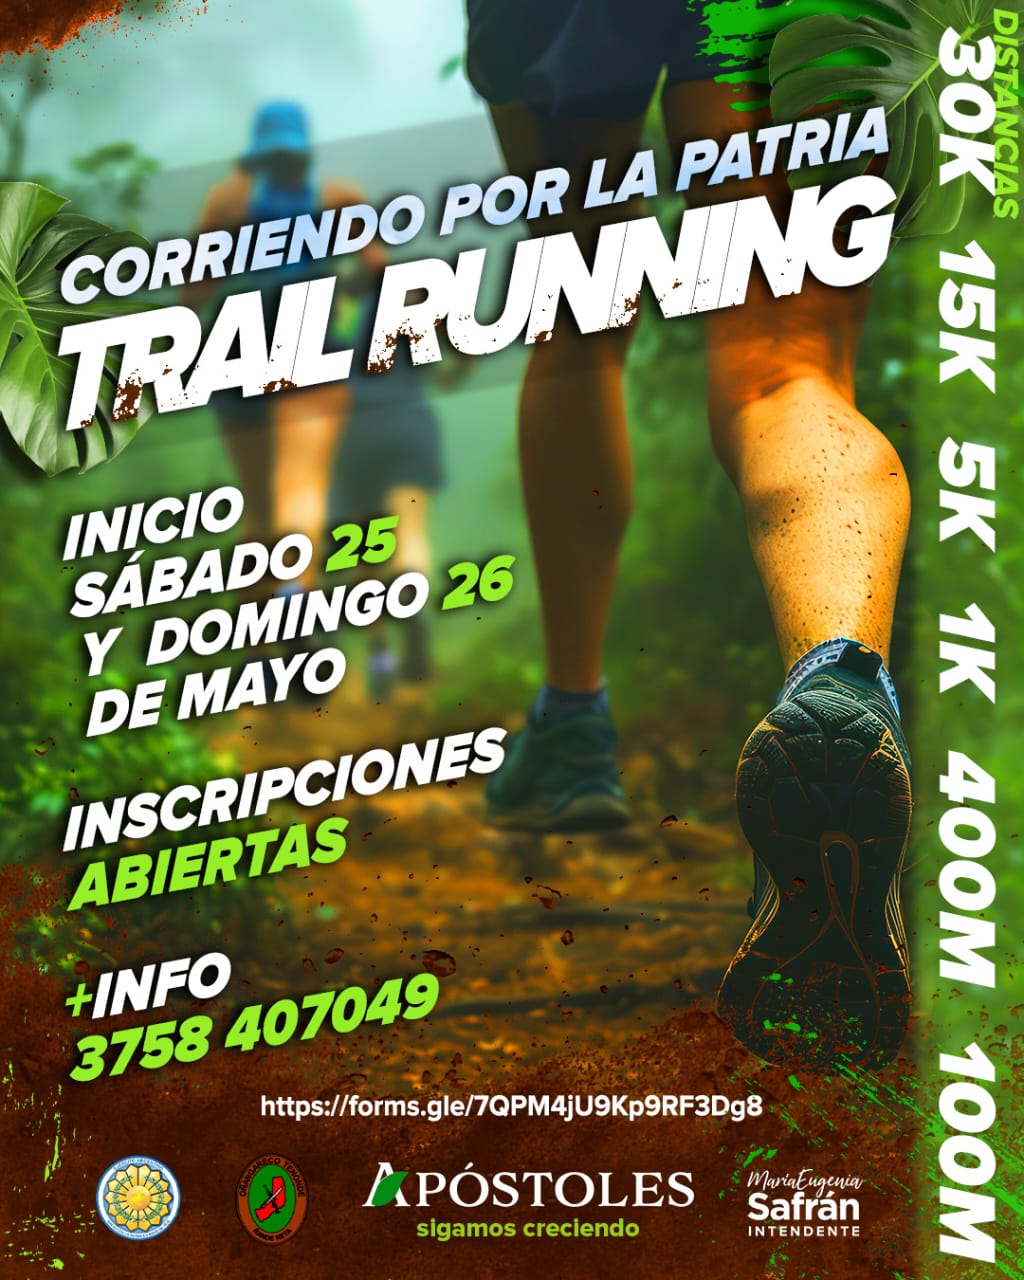 Se desarrollará la Competencia “Corriendo Por la Patria Trail Running”